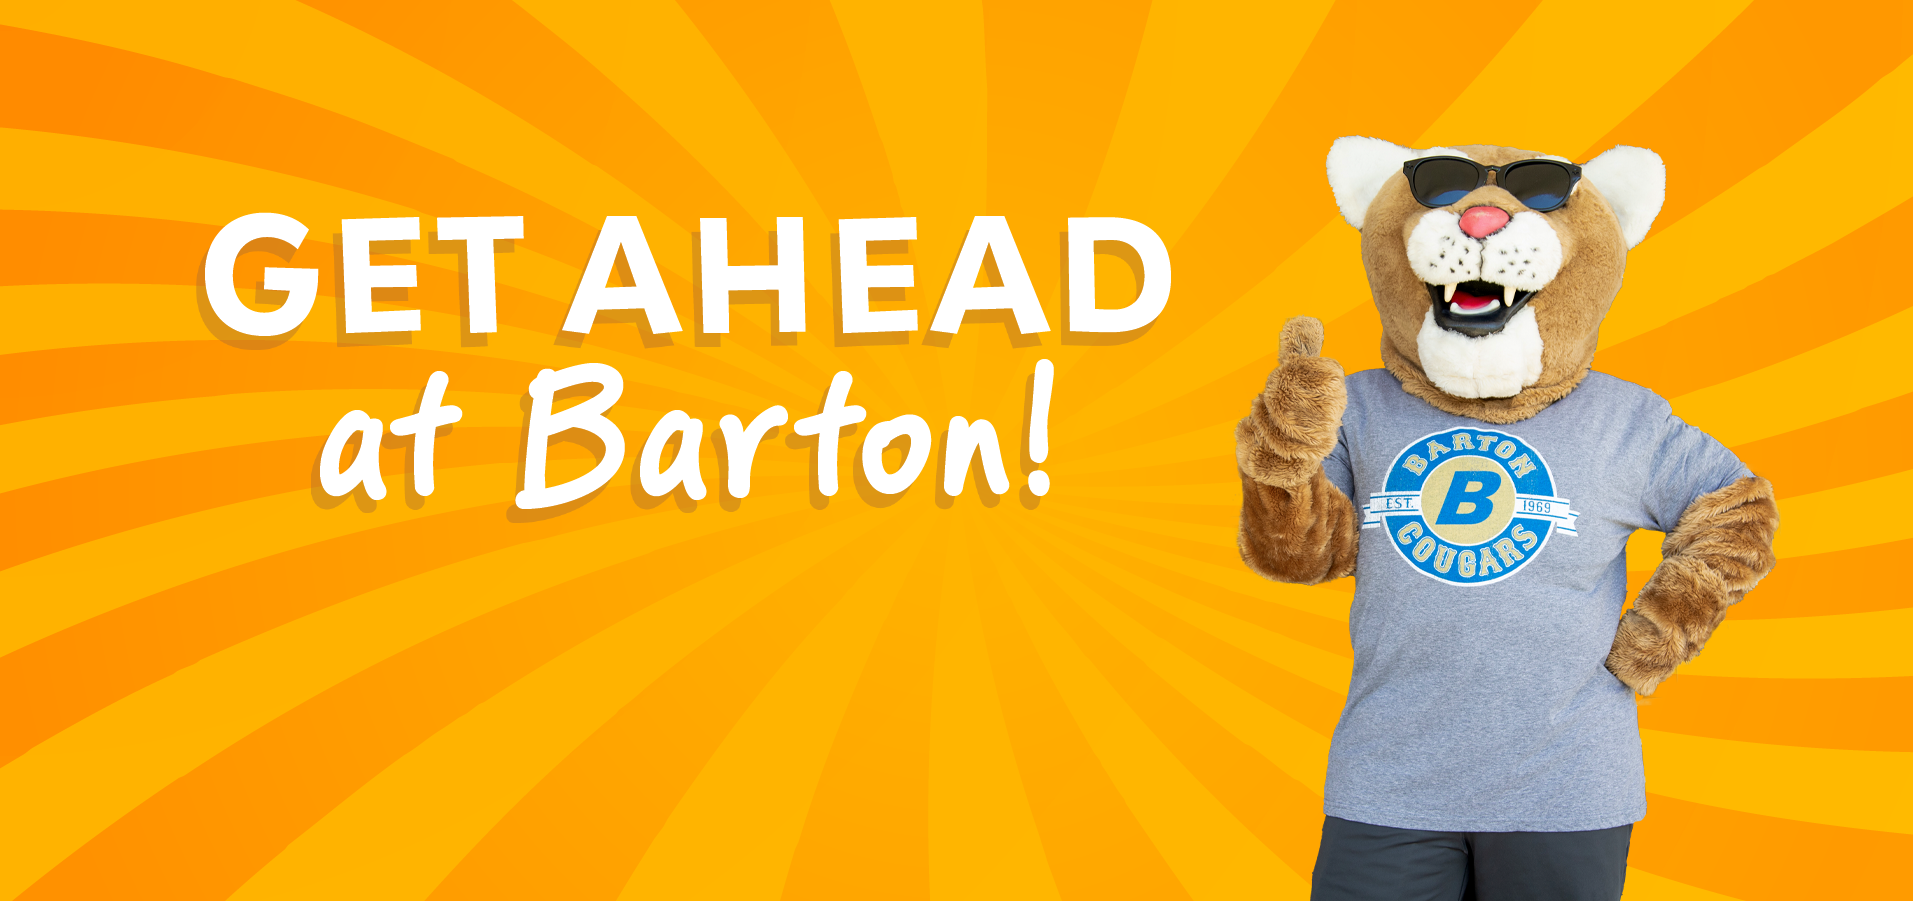 Get Ahead at Barton this Summer!